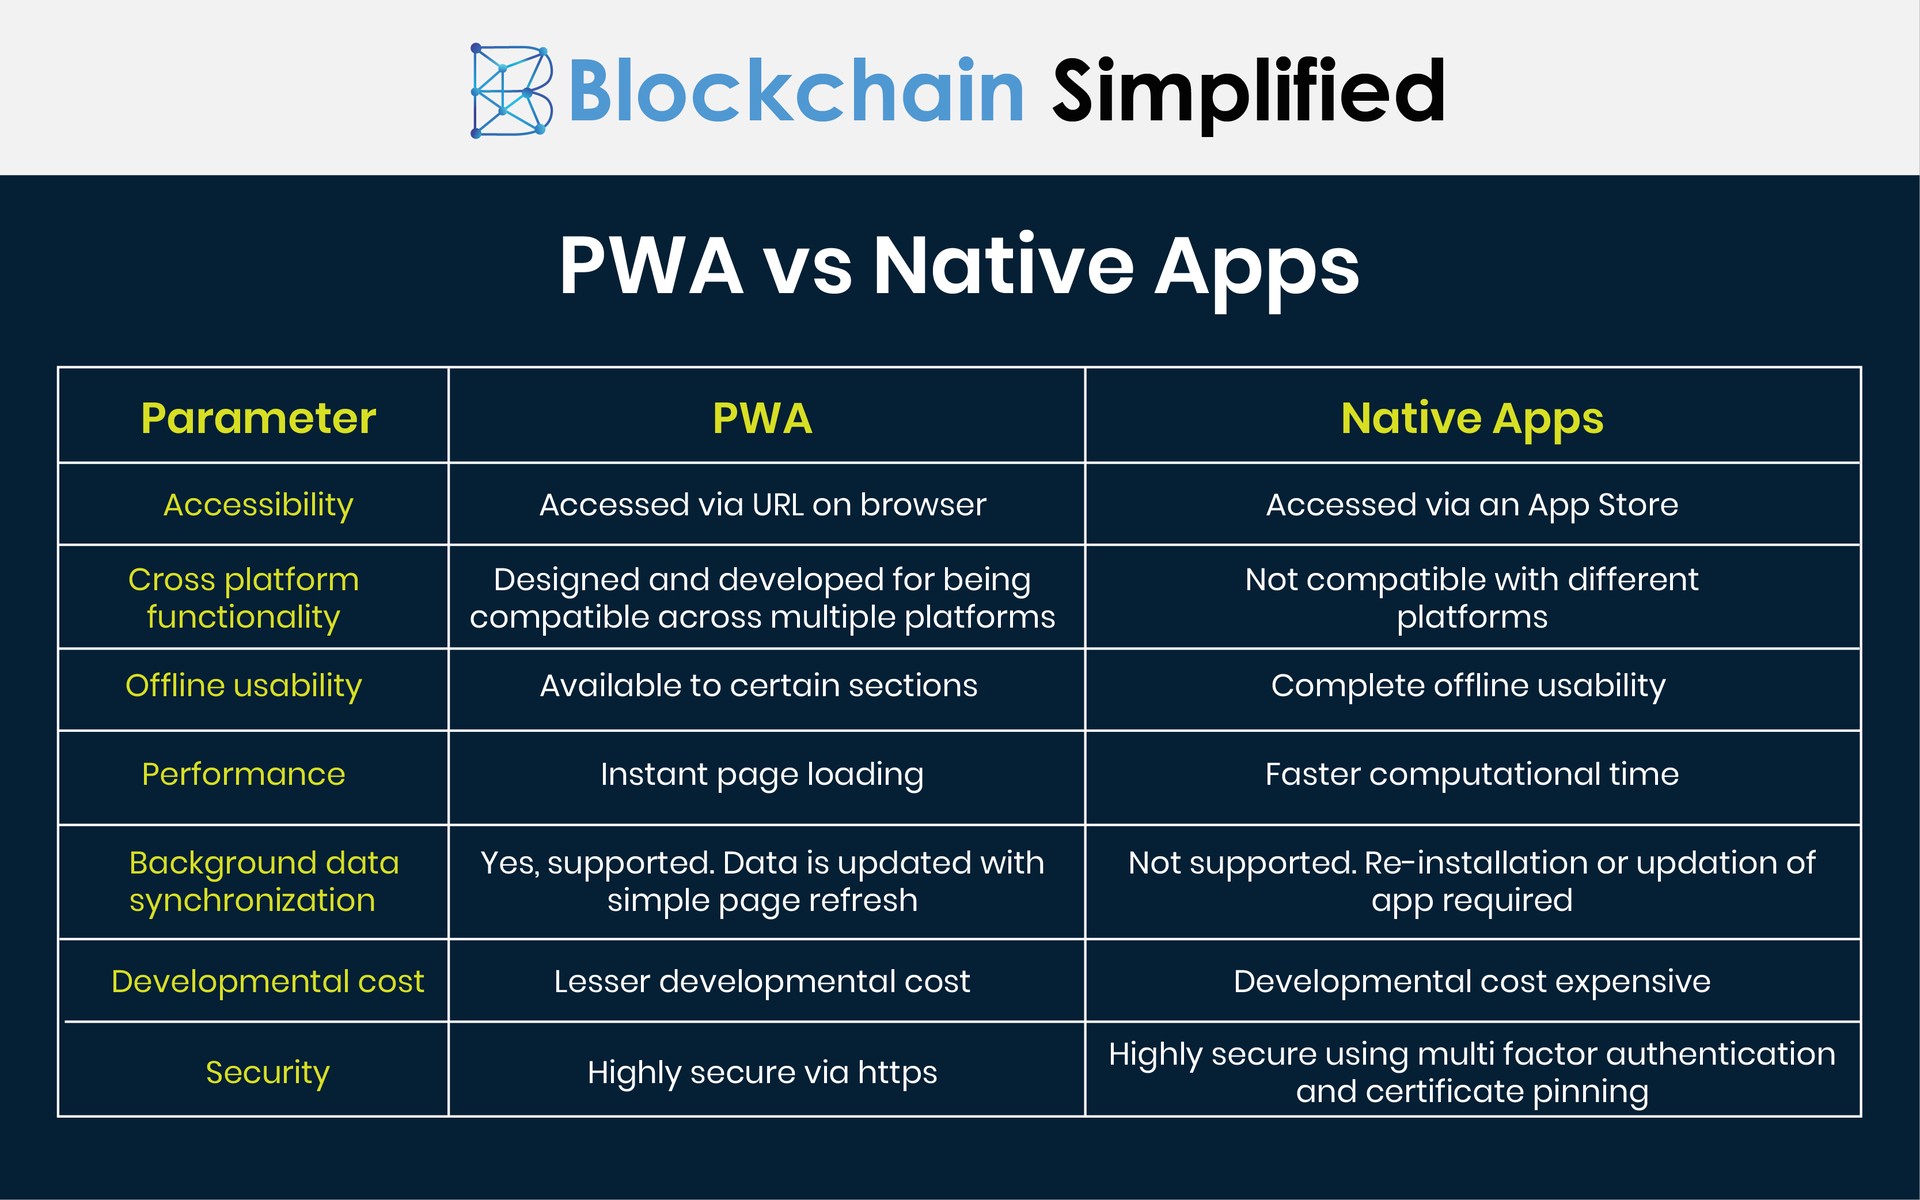 PWA vs Native differences